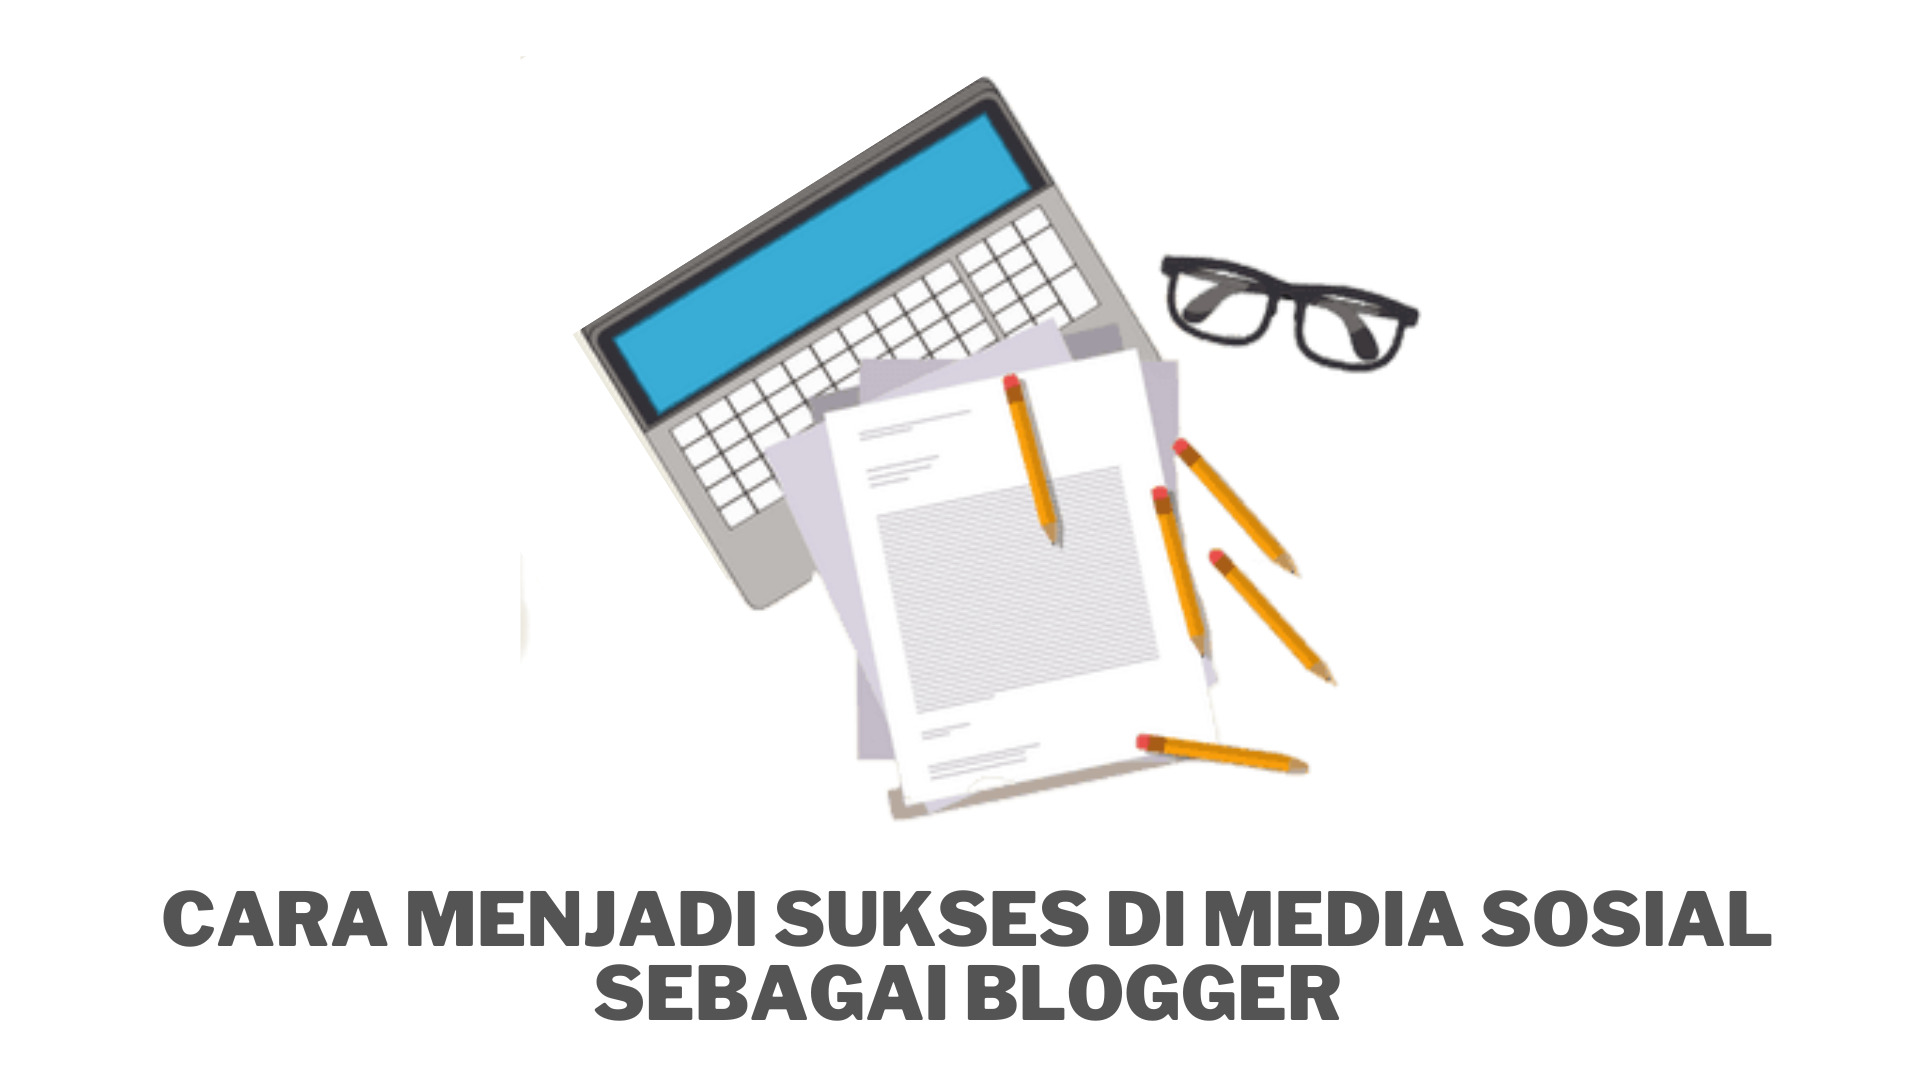 Cara Menjadi Sukses di Media Sosial sebagai Blogger